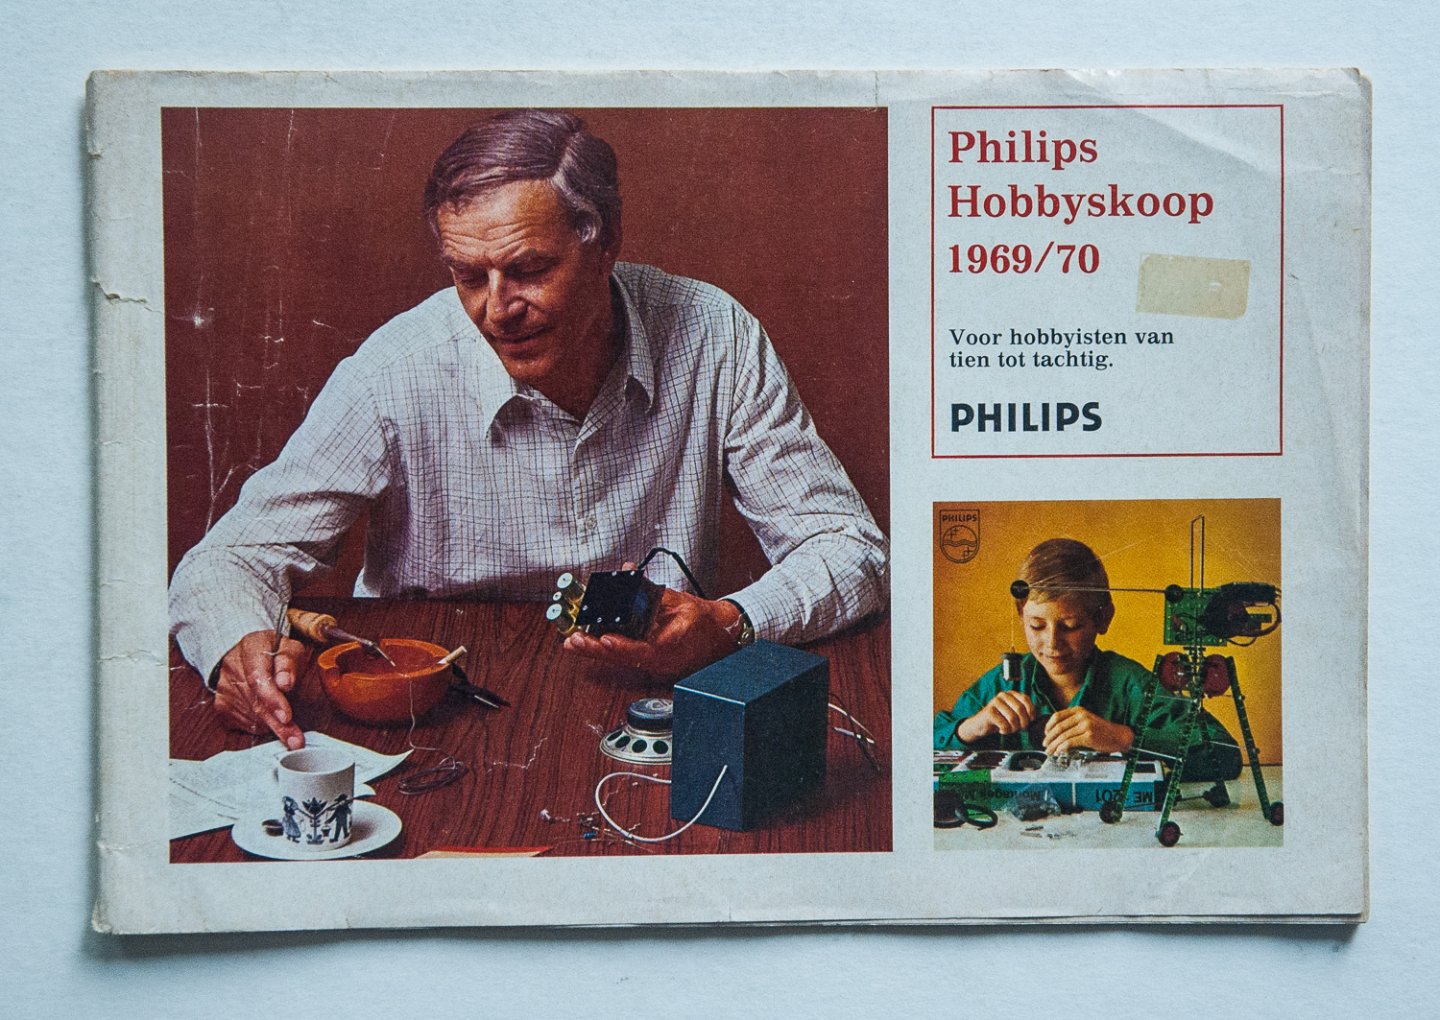 Philips Gloeilampenfabrieken Nederland n.v., Eindhoven - Philips  Hobbyskoop 1969/70 - voor hobbyisten van tien tot tachtig